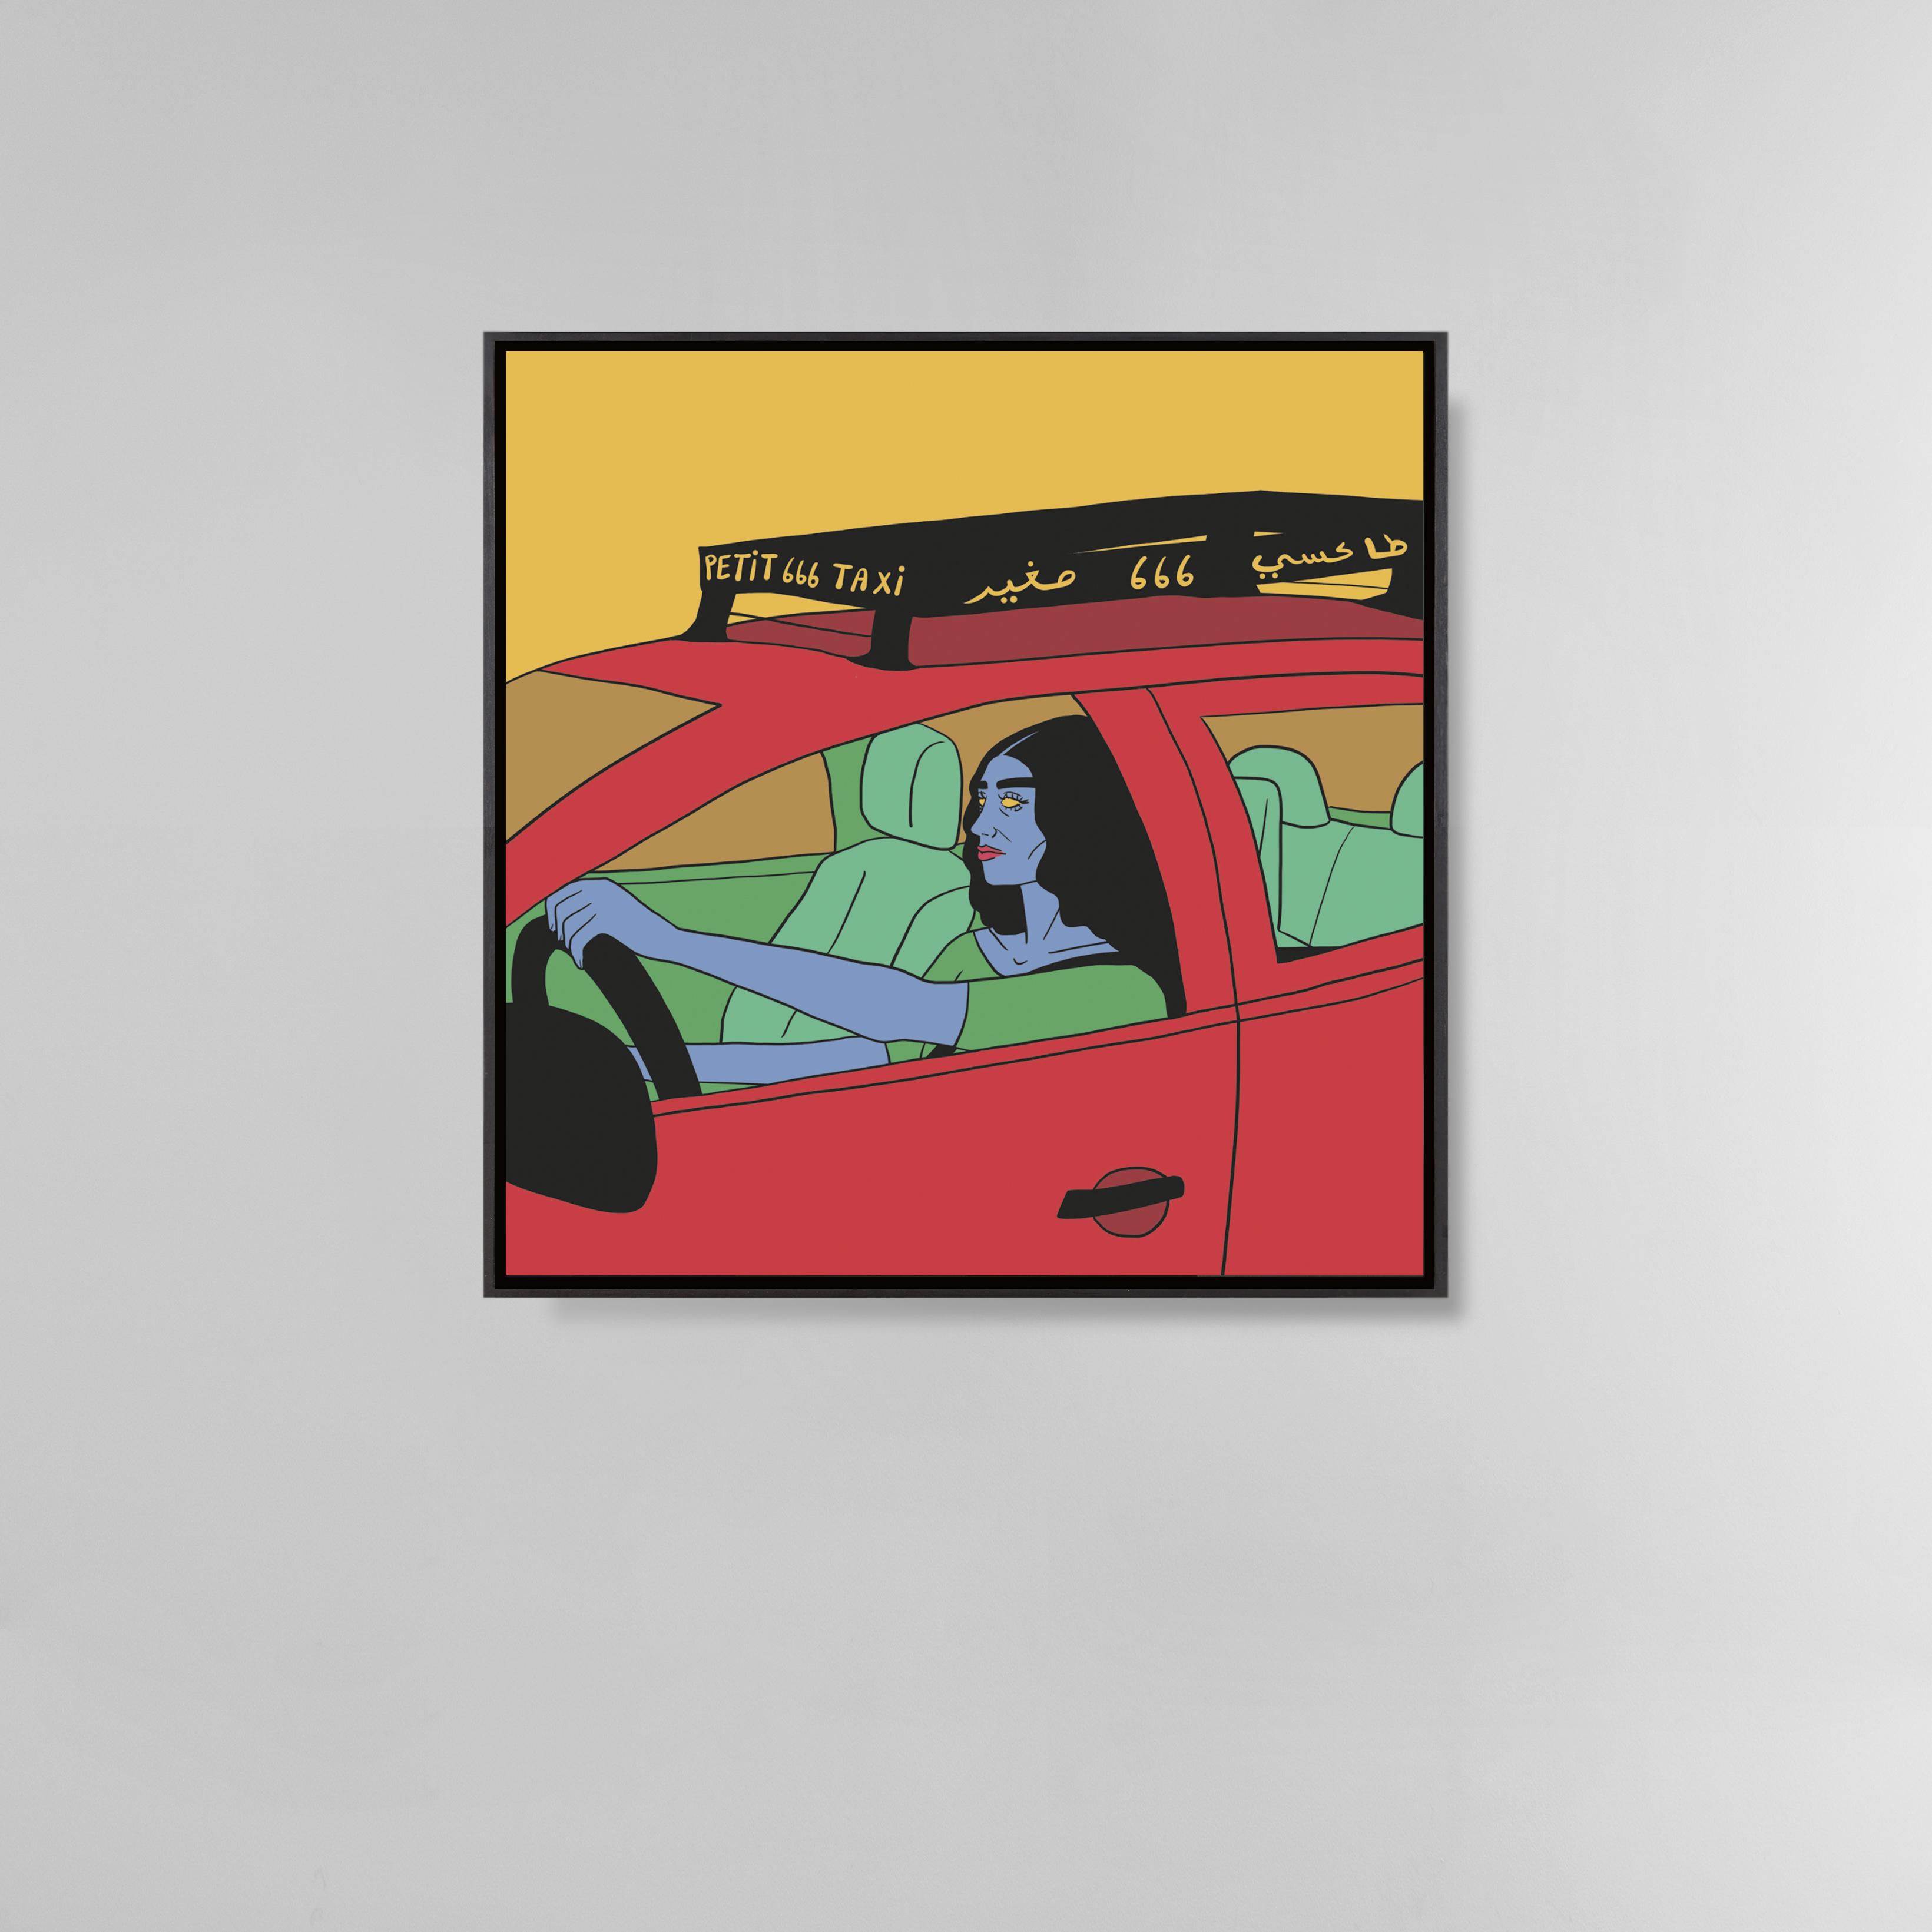 Femme et son taxi
Dessin digital sur toile
100 x 100 cm